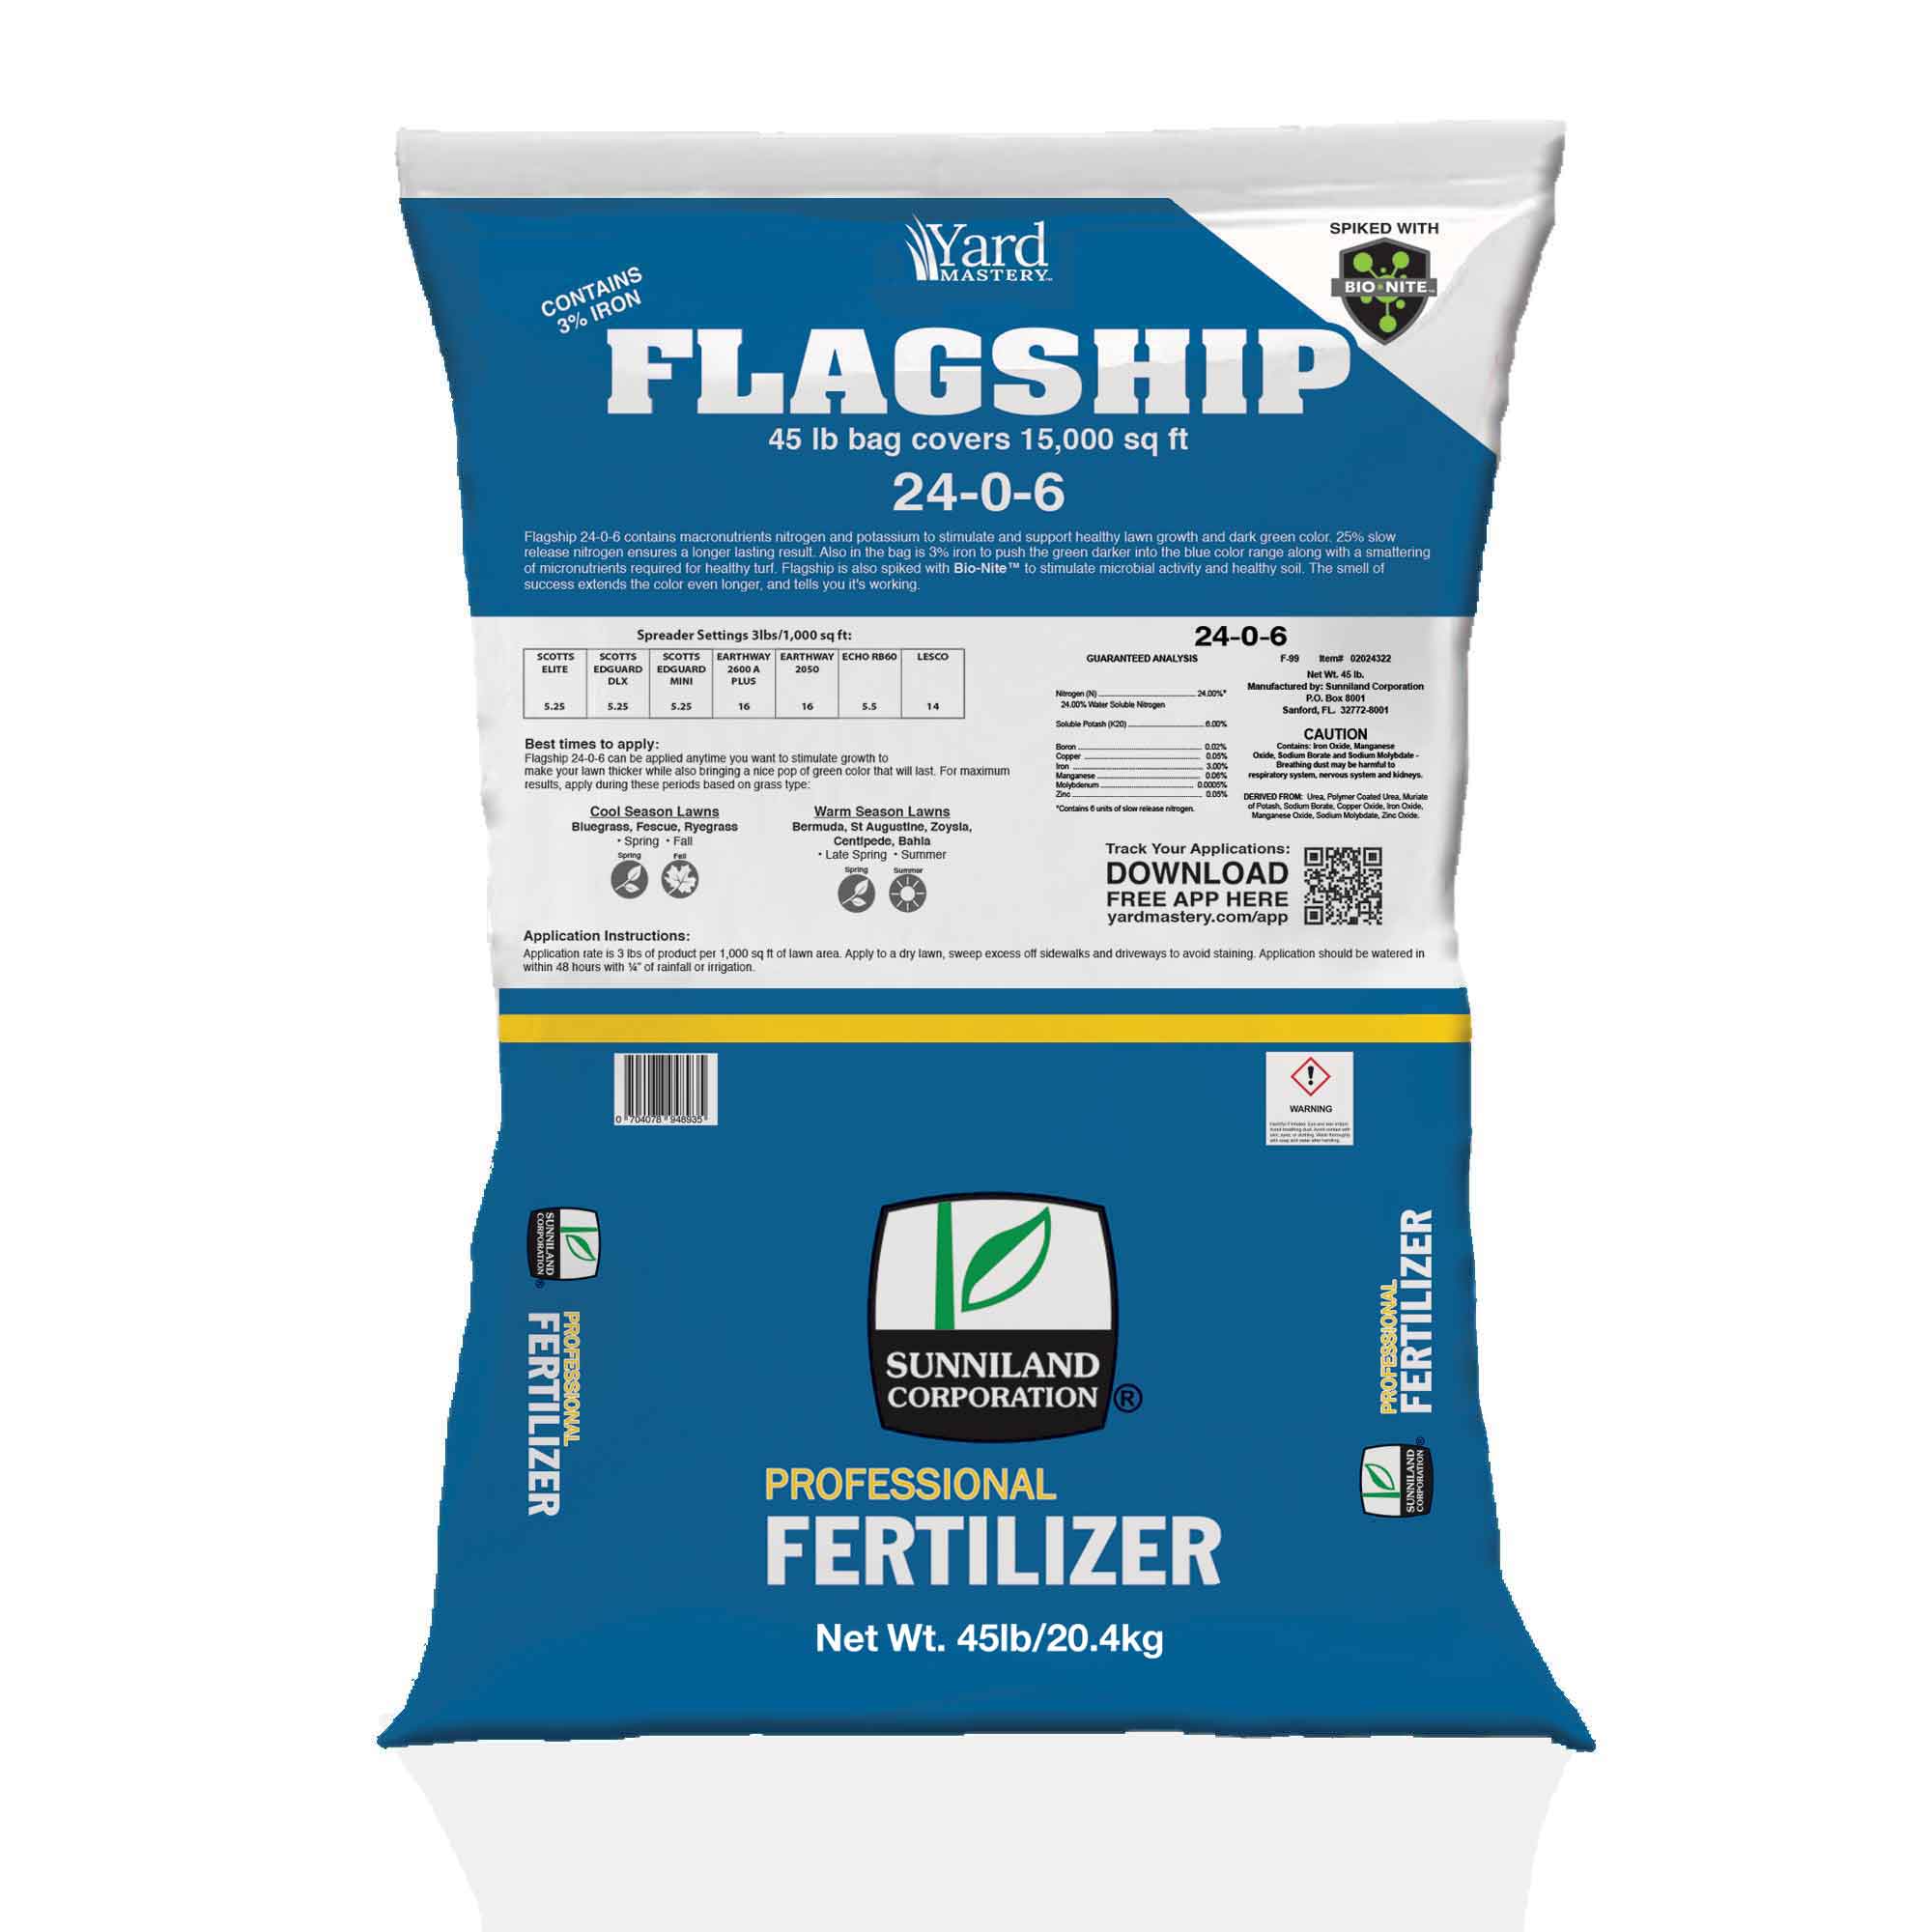 24-0-6 Flagship Fertilizer 3% Iron - Bio-Nite - Granular Lawn Fertilizer